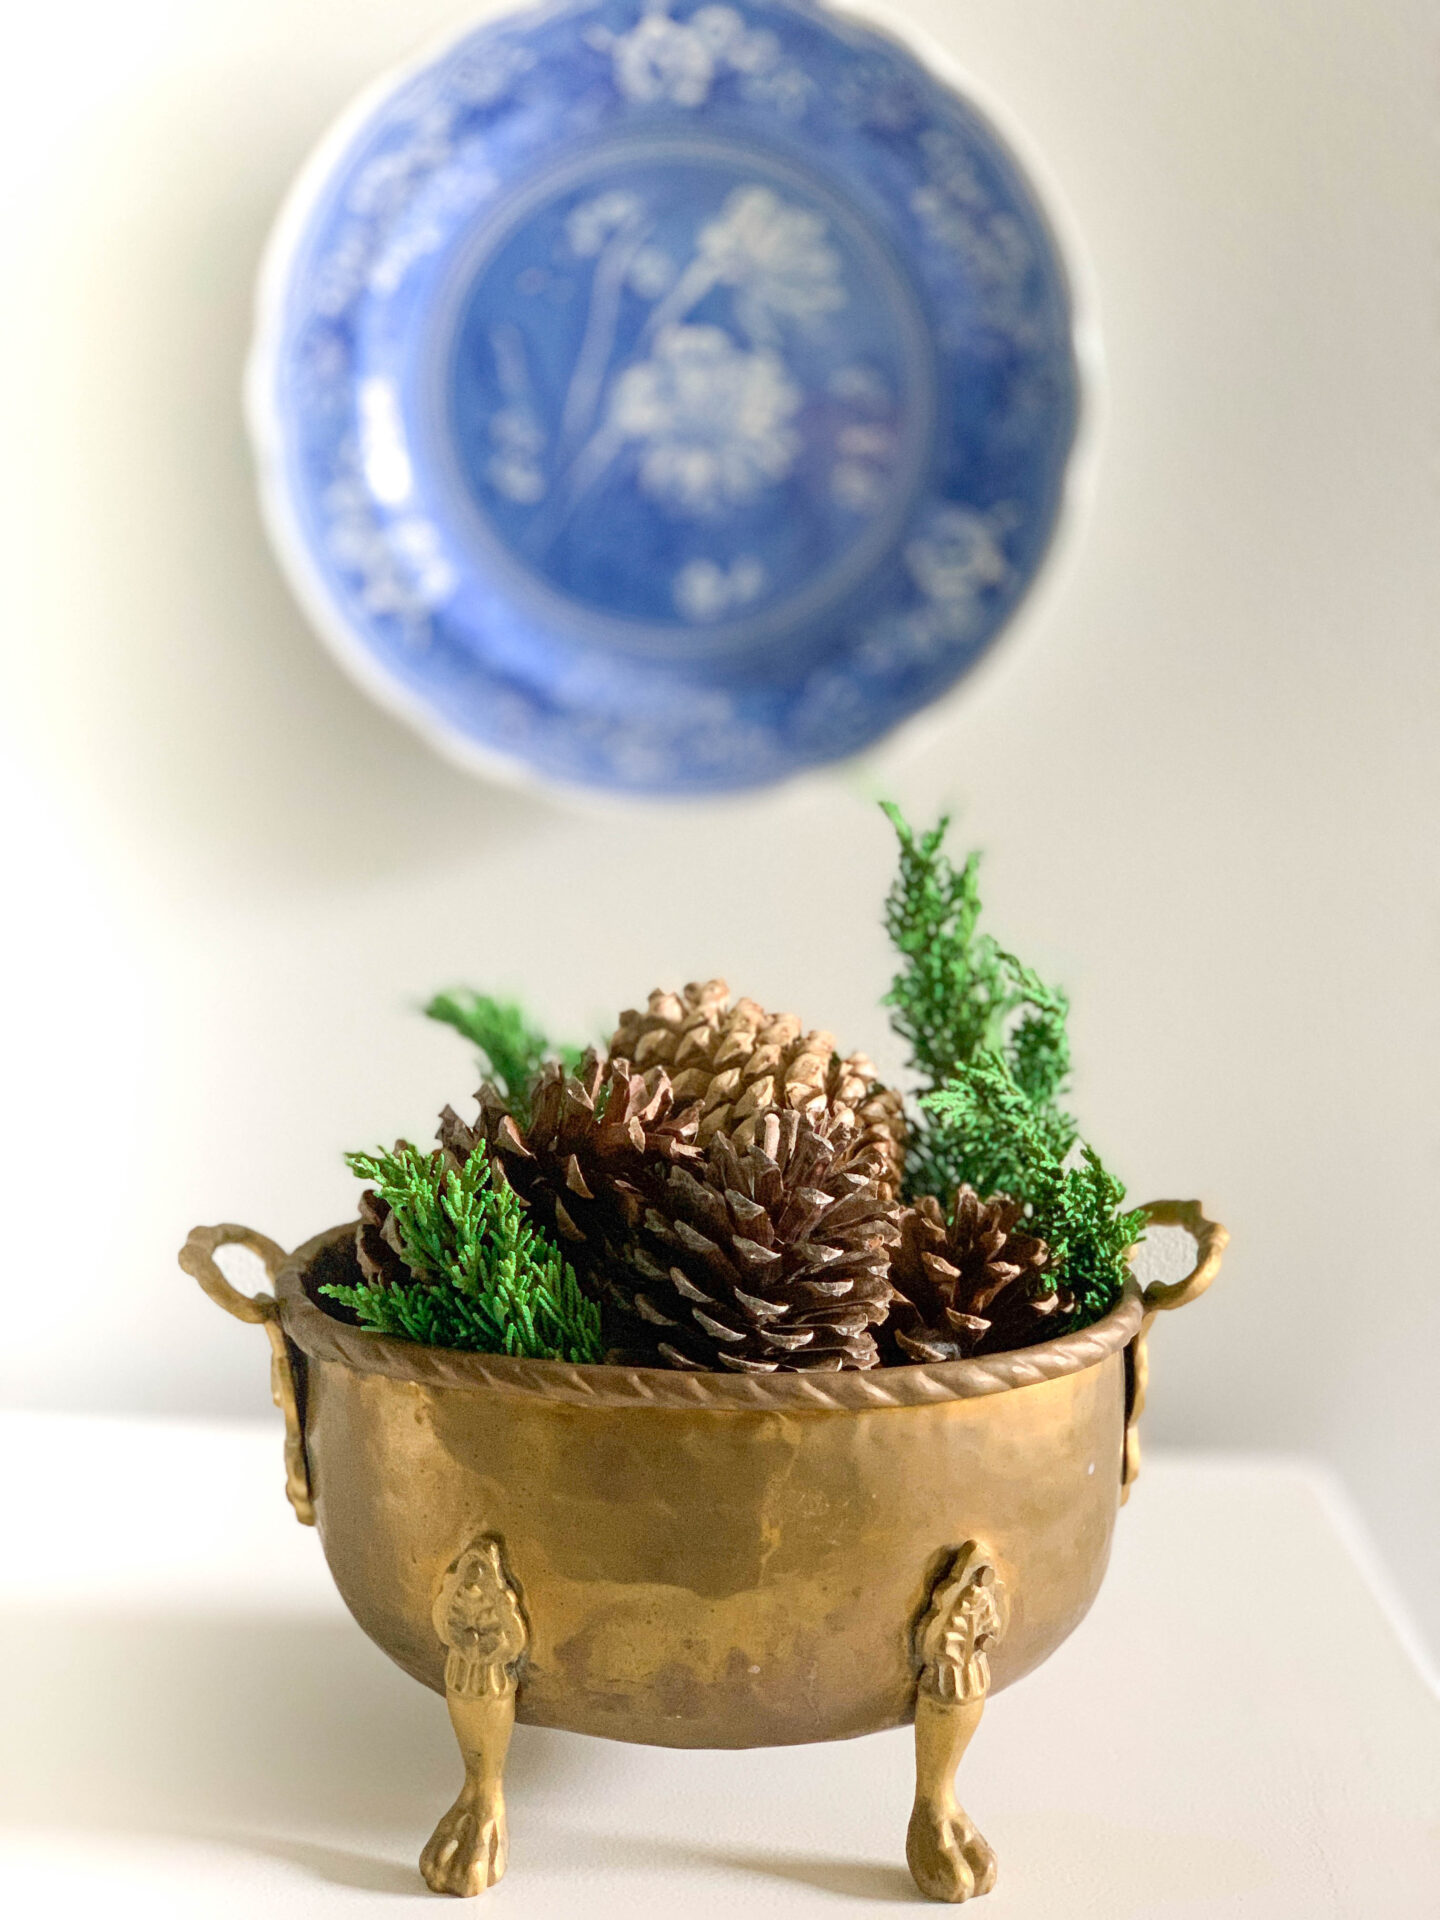 DIY Cinnamon Scented Pine Cones